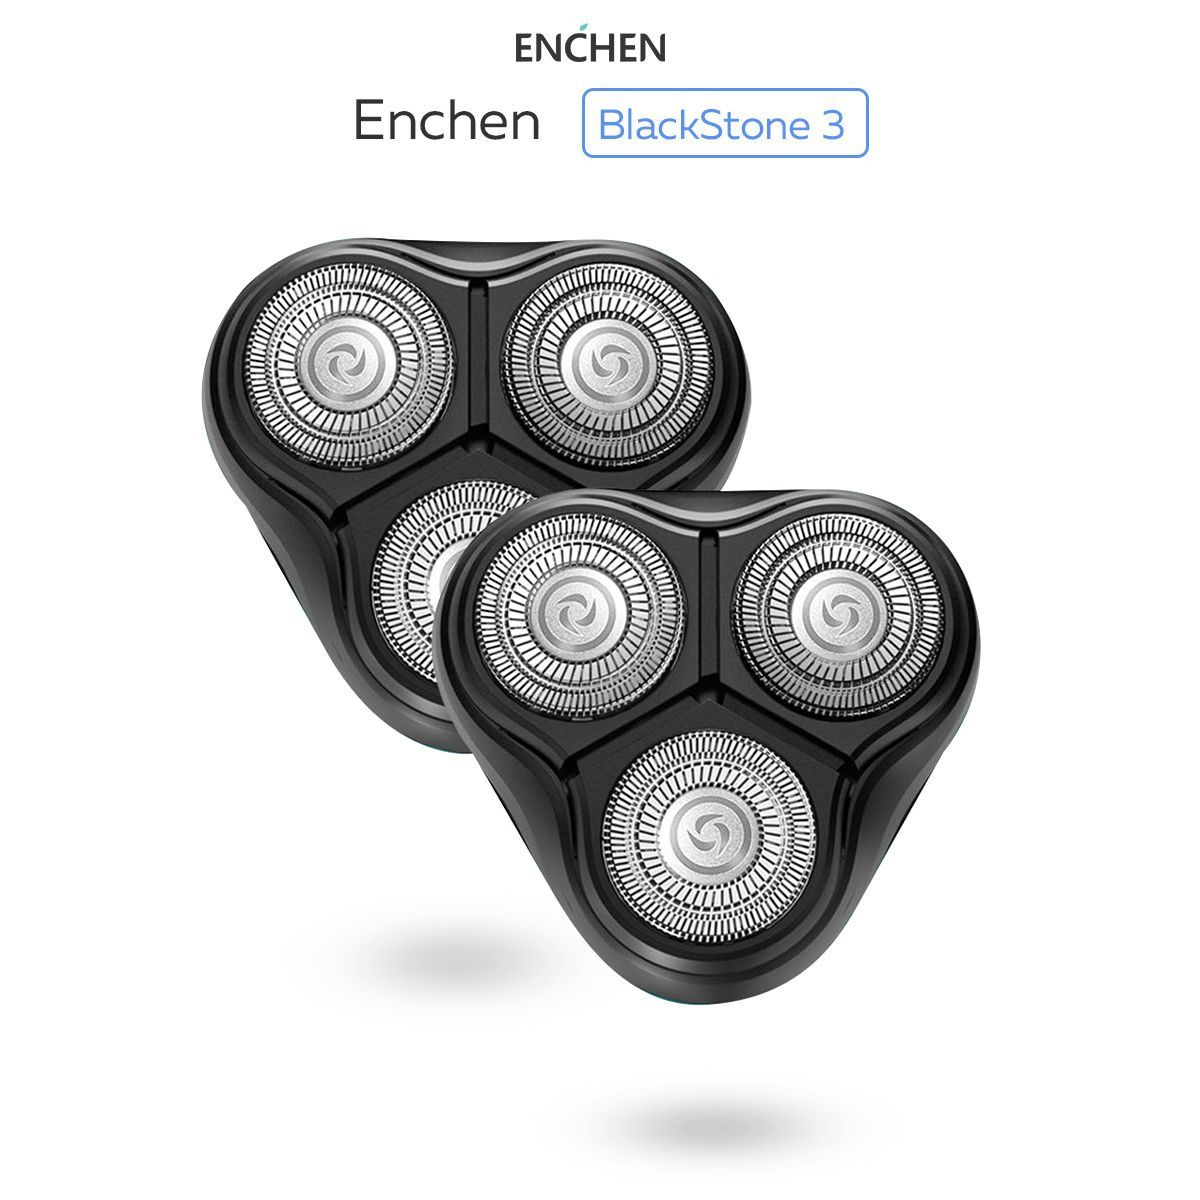 Сменные бритвенные головки для электробритвы Enchen BlackStone 3 и Gentleman 3s/5s. 2шт